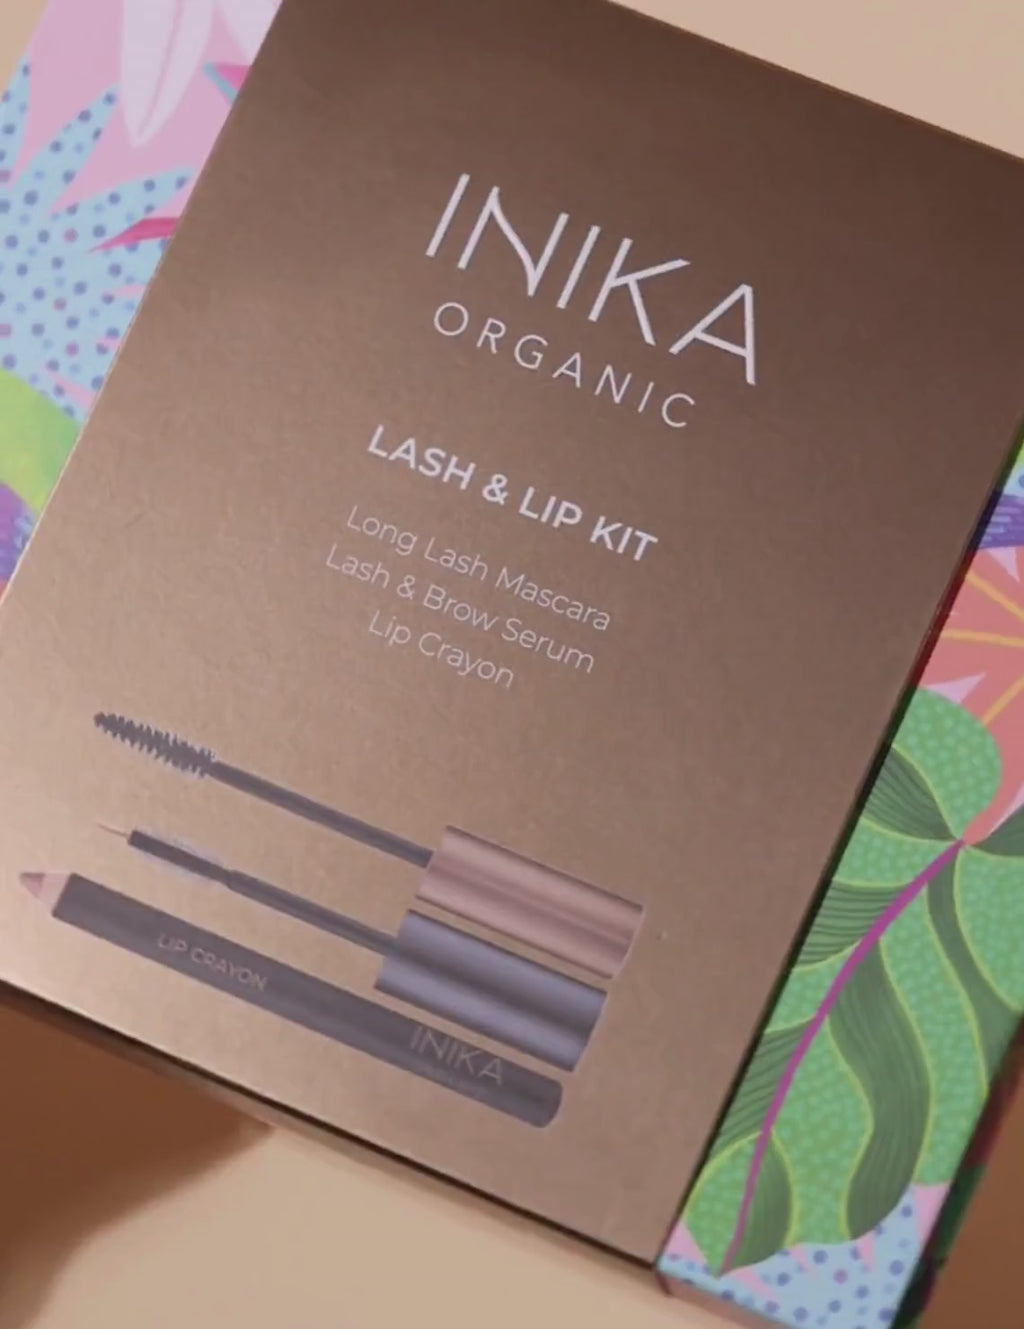 INIKA Organic Lash & Lip Kit